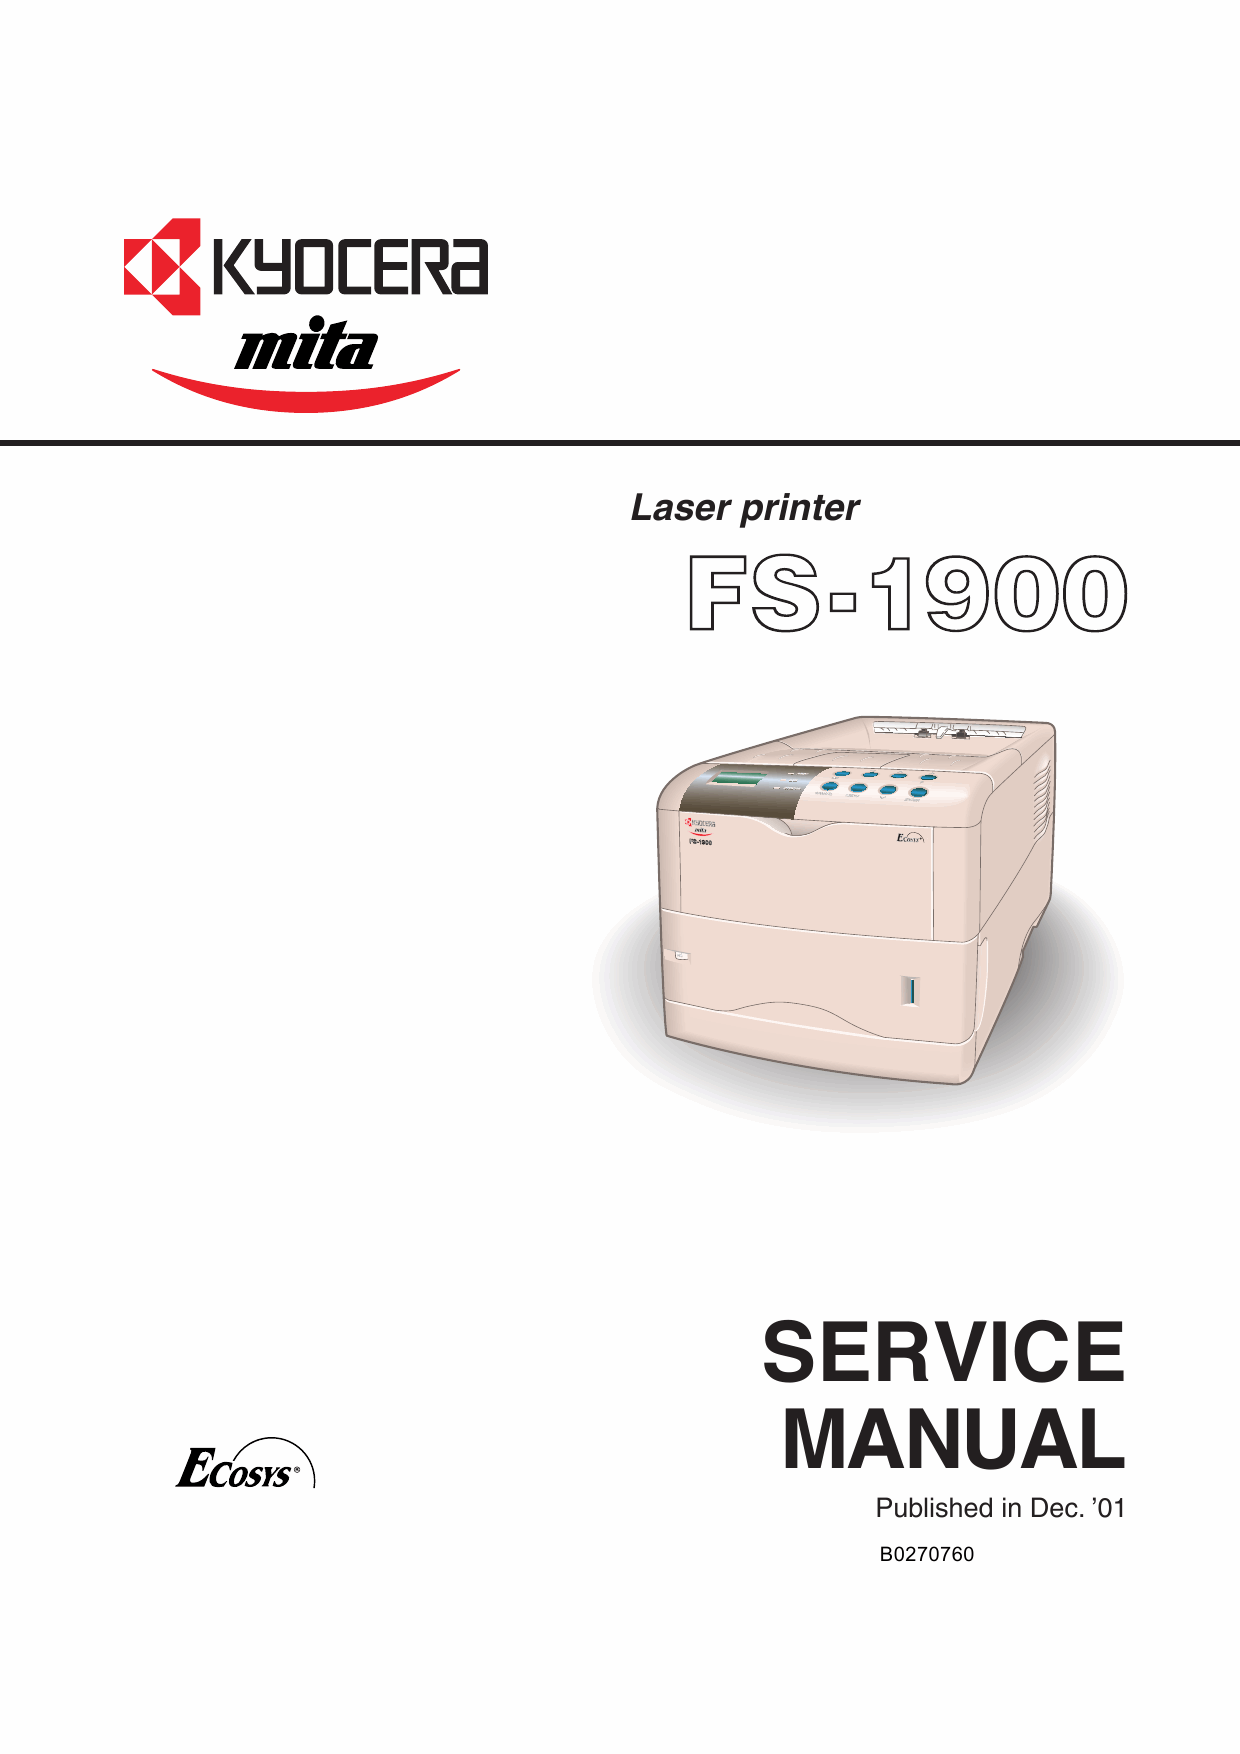 KYOCERA LaserPrinter FS-1900 Parts and Service Manual-1